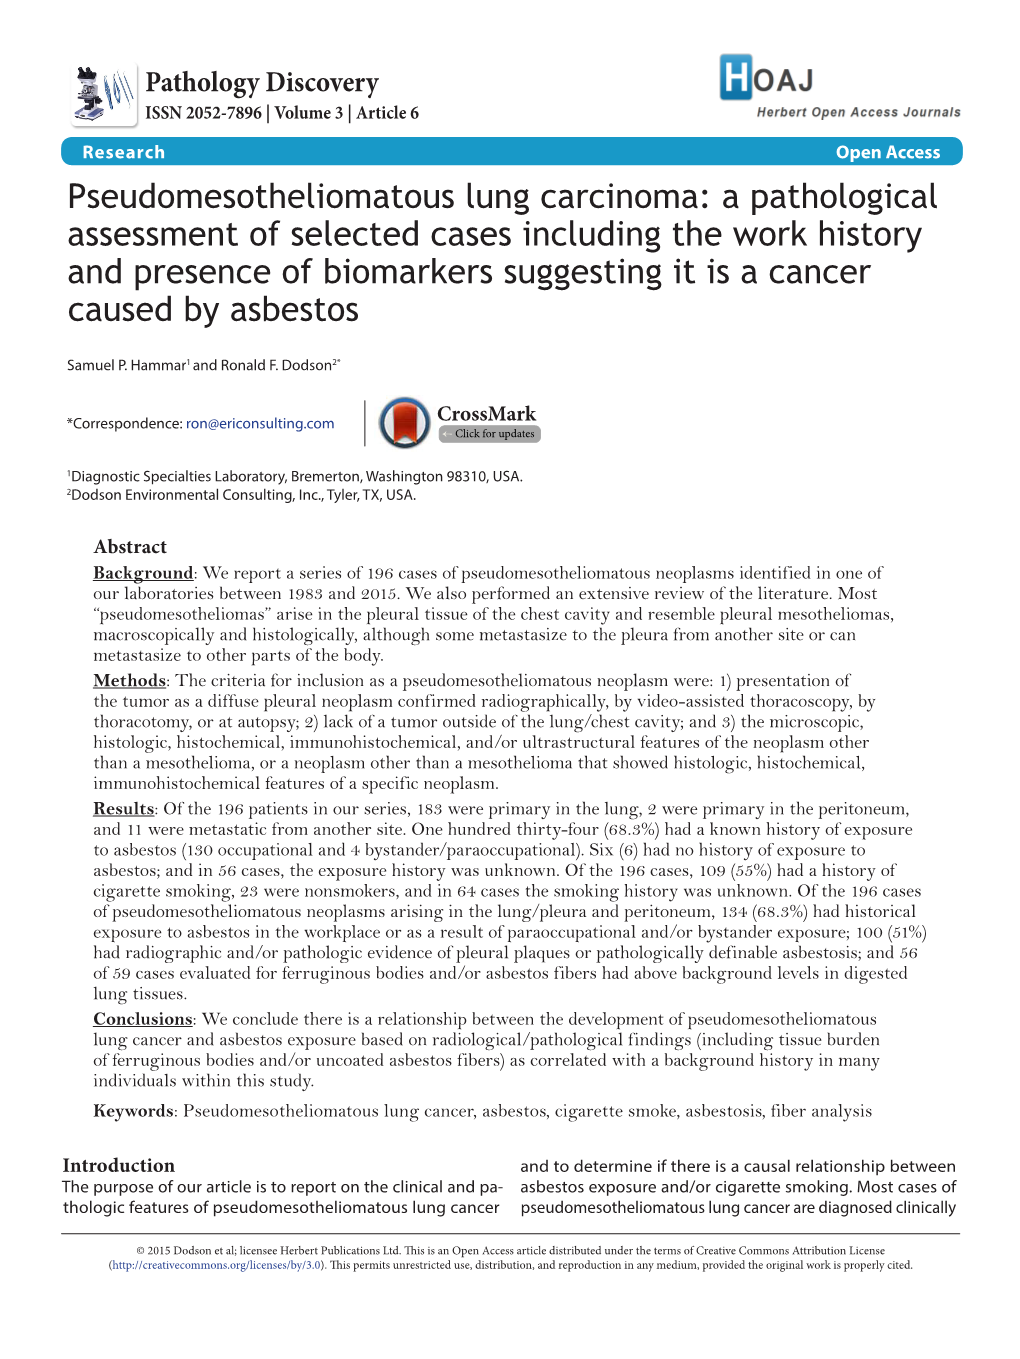 Pseudomesotheliomatous Lung Carcinoma